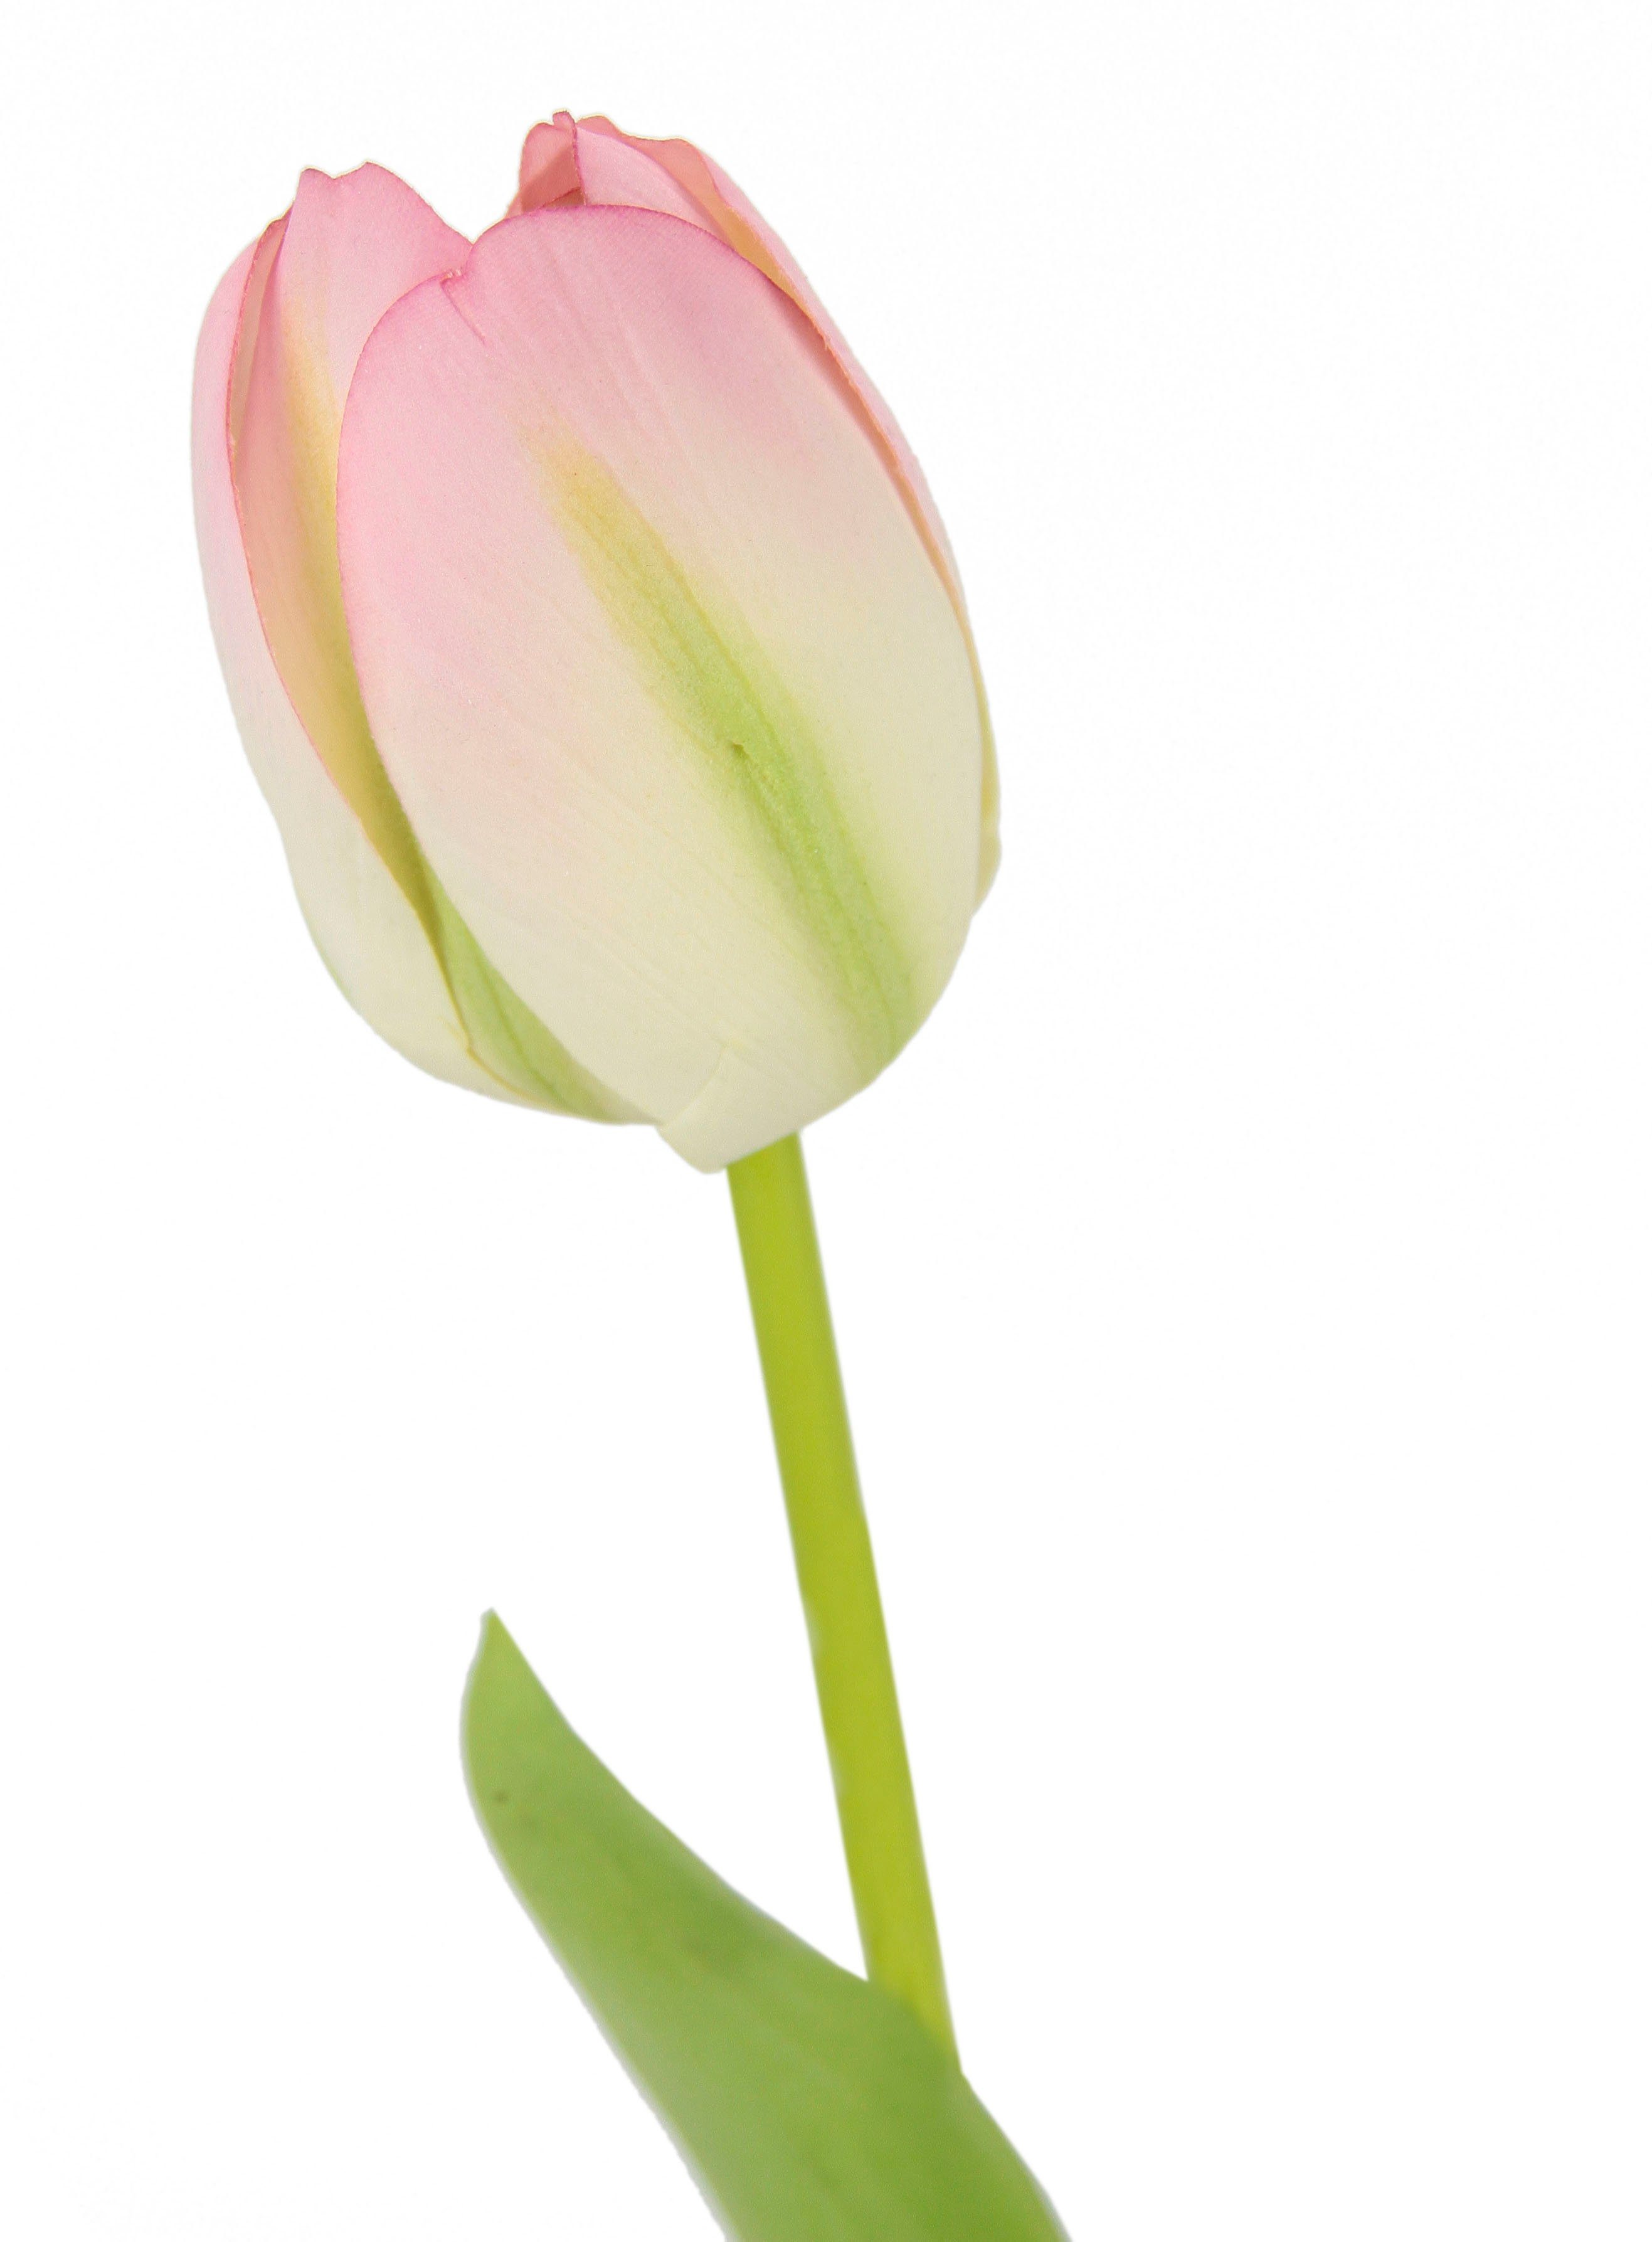 Set I.GE.A., Höhe weiß/rosa Kunstblumen, Tulpen, cm, künstliche 67 5er Stielblume Real Tulpenknospen, Kunstblume Touch